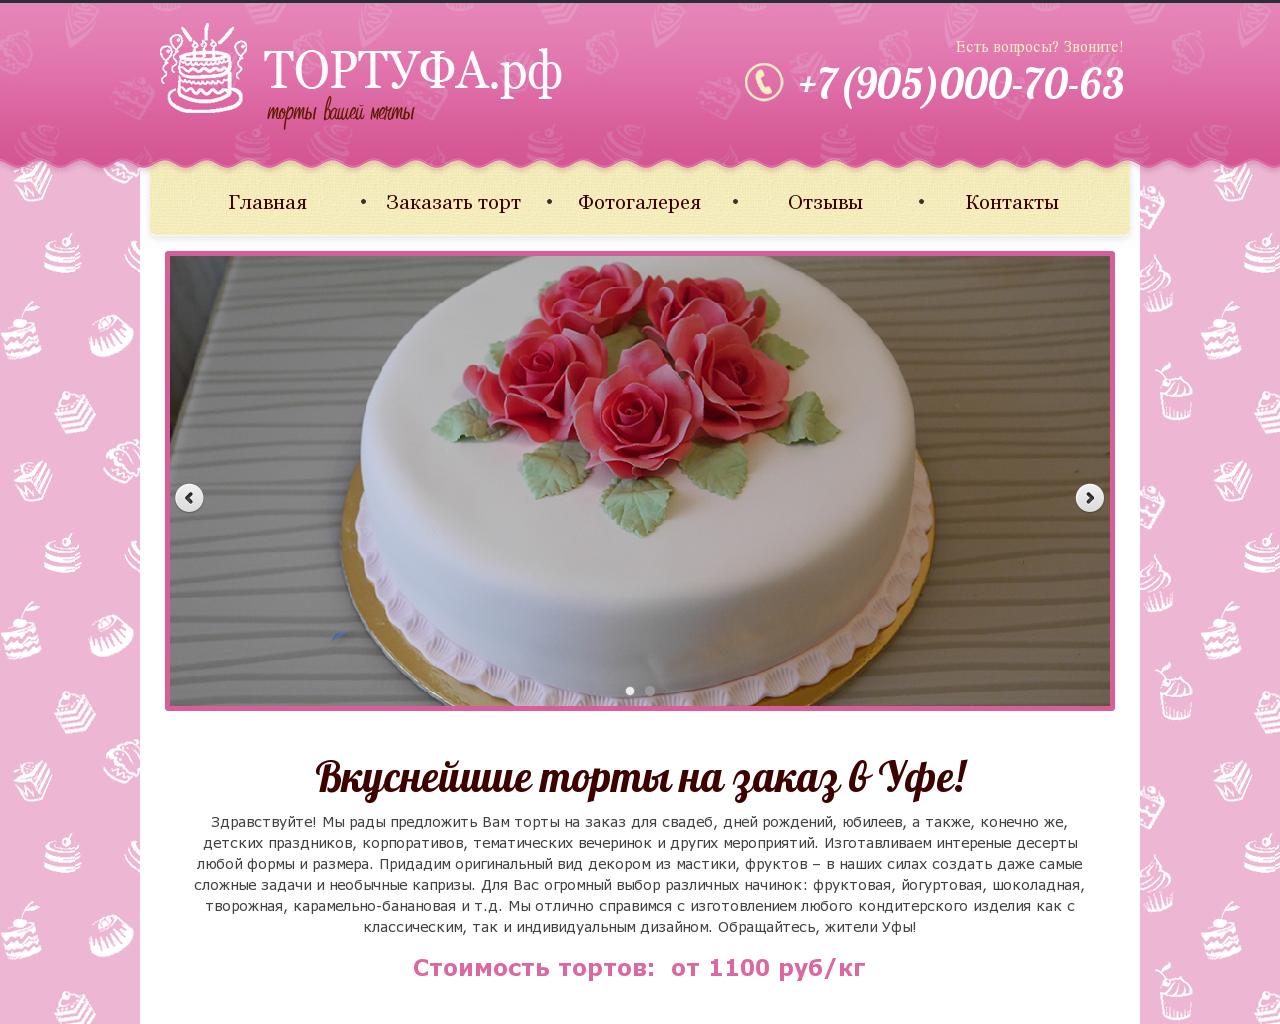 Изображение сайта тортуфа.рф в разрешении 1280x1024